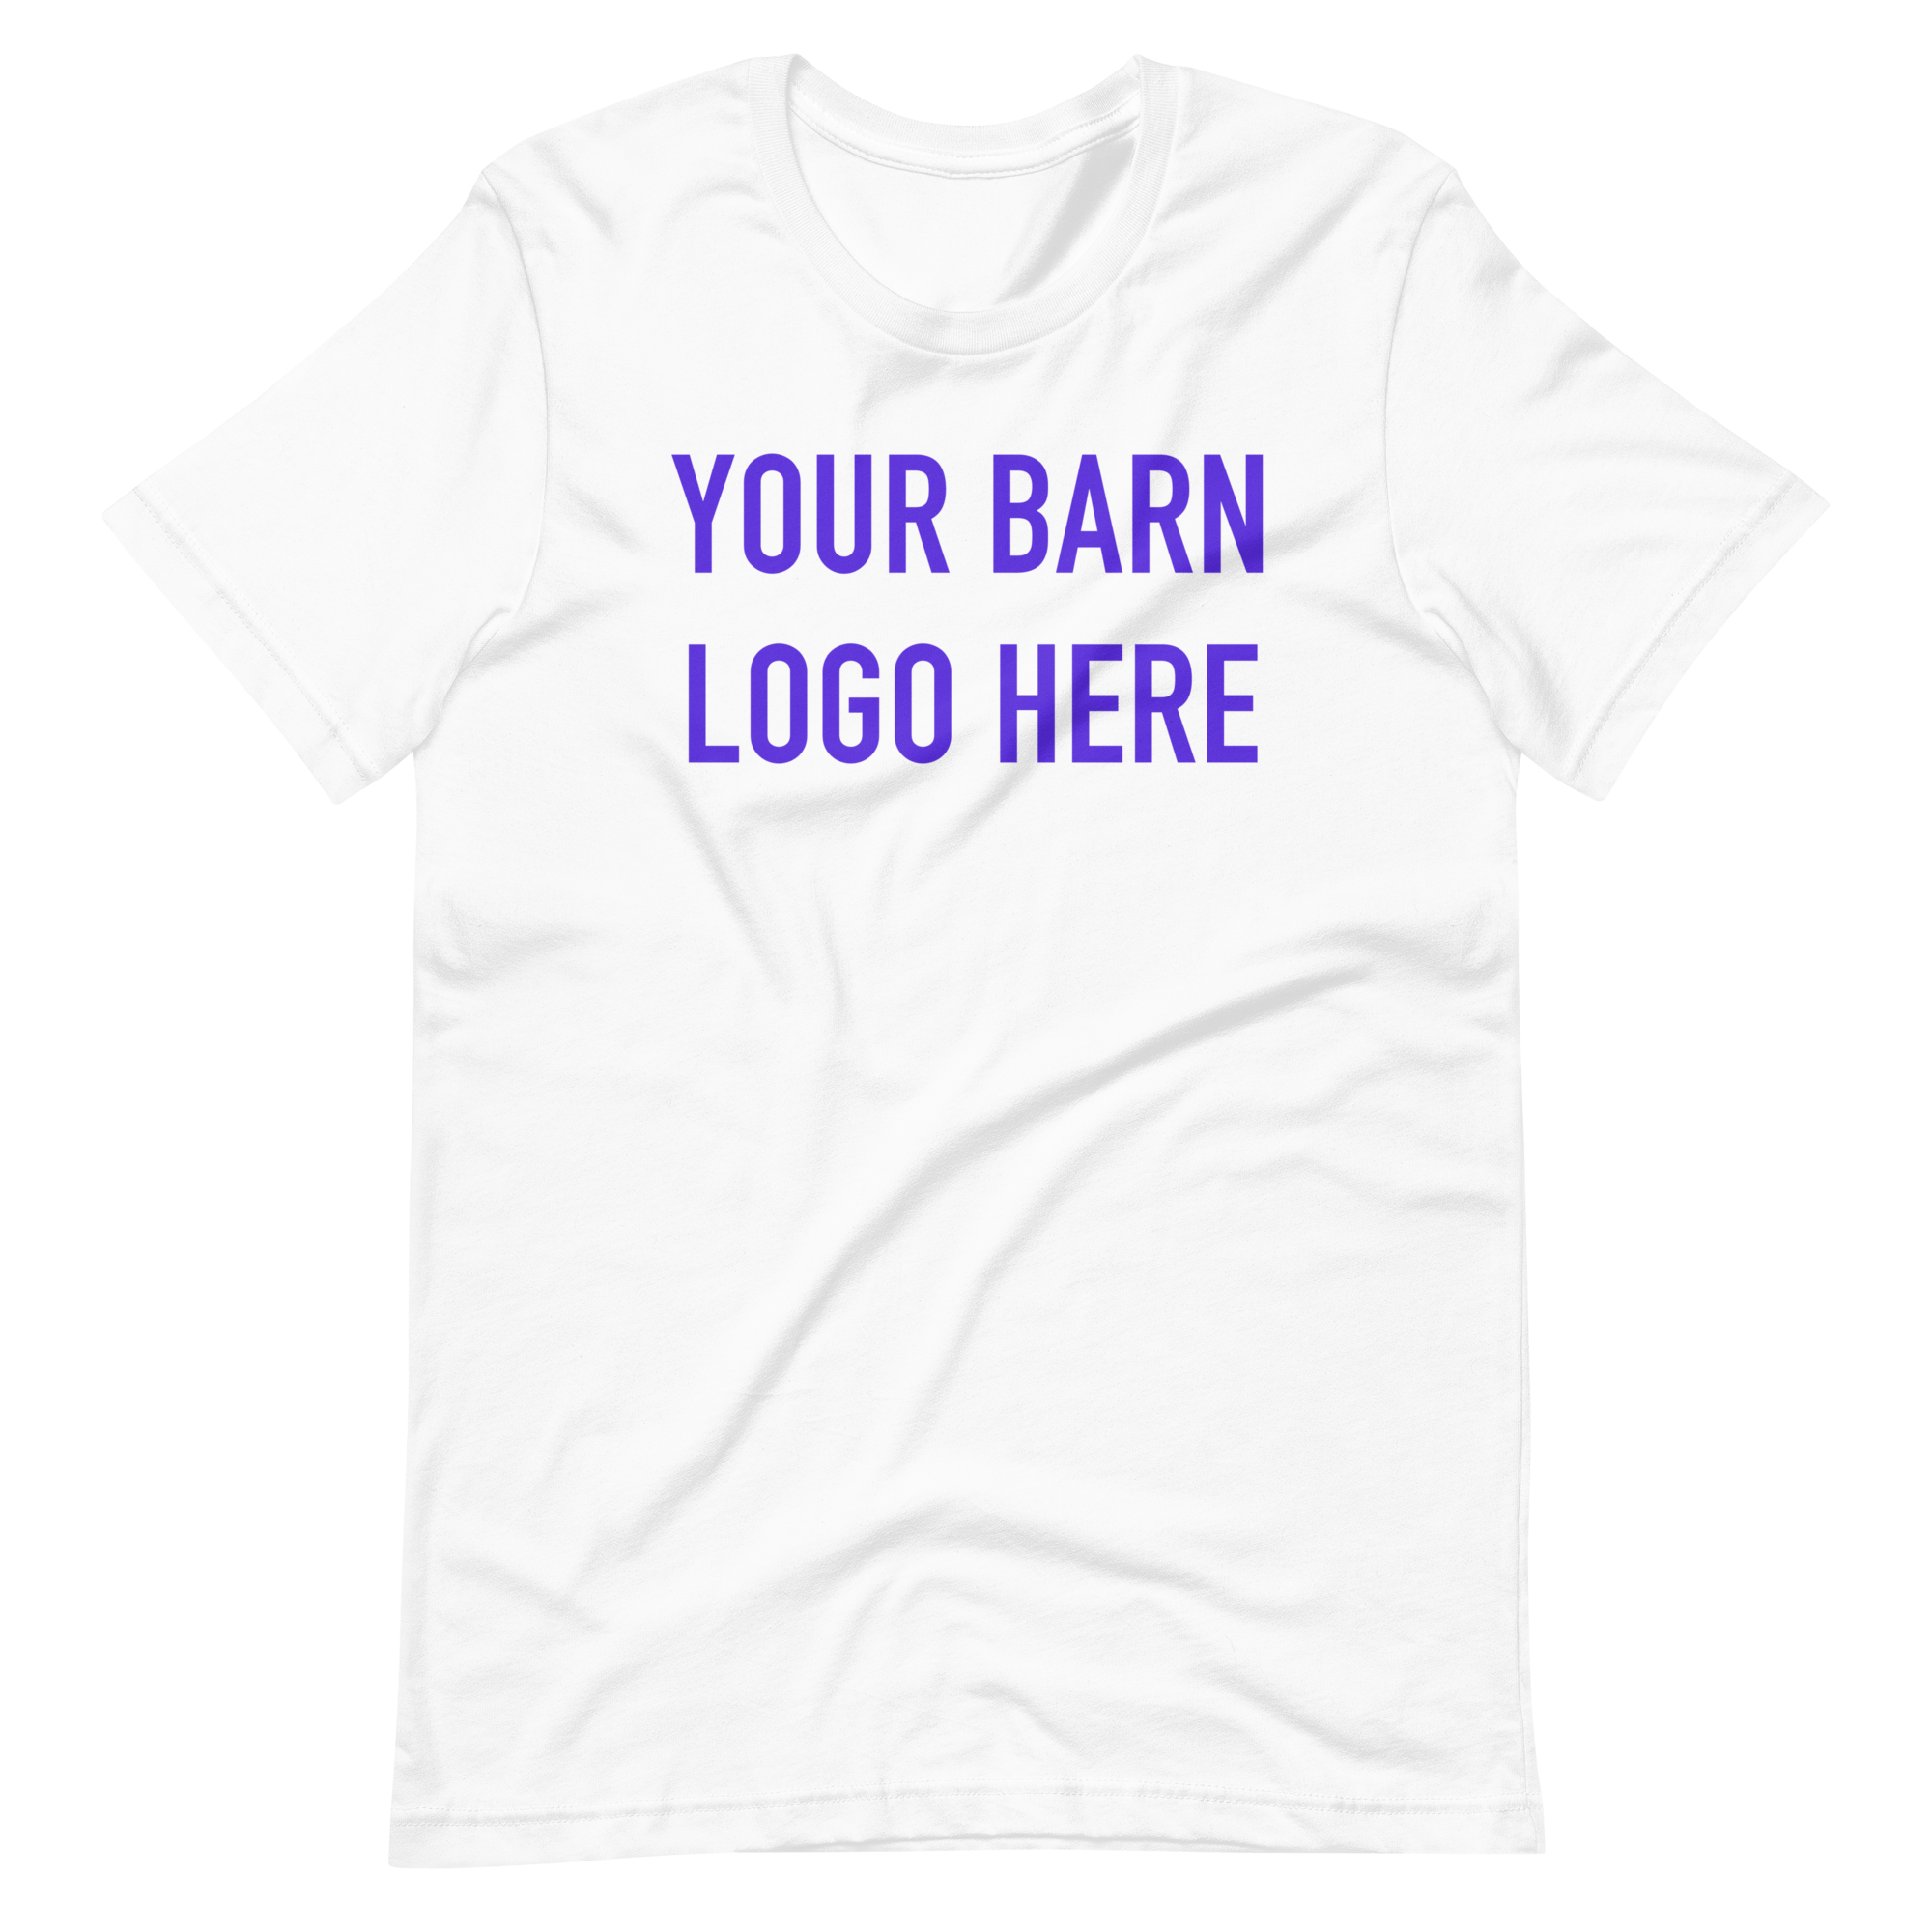 Your Barn Name Tee